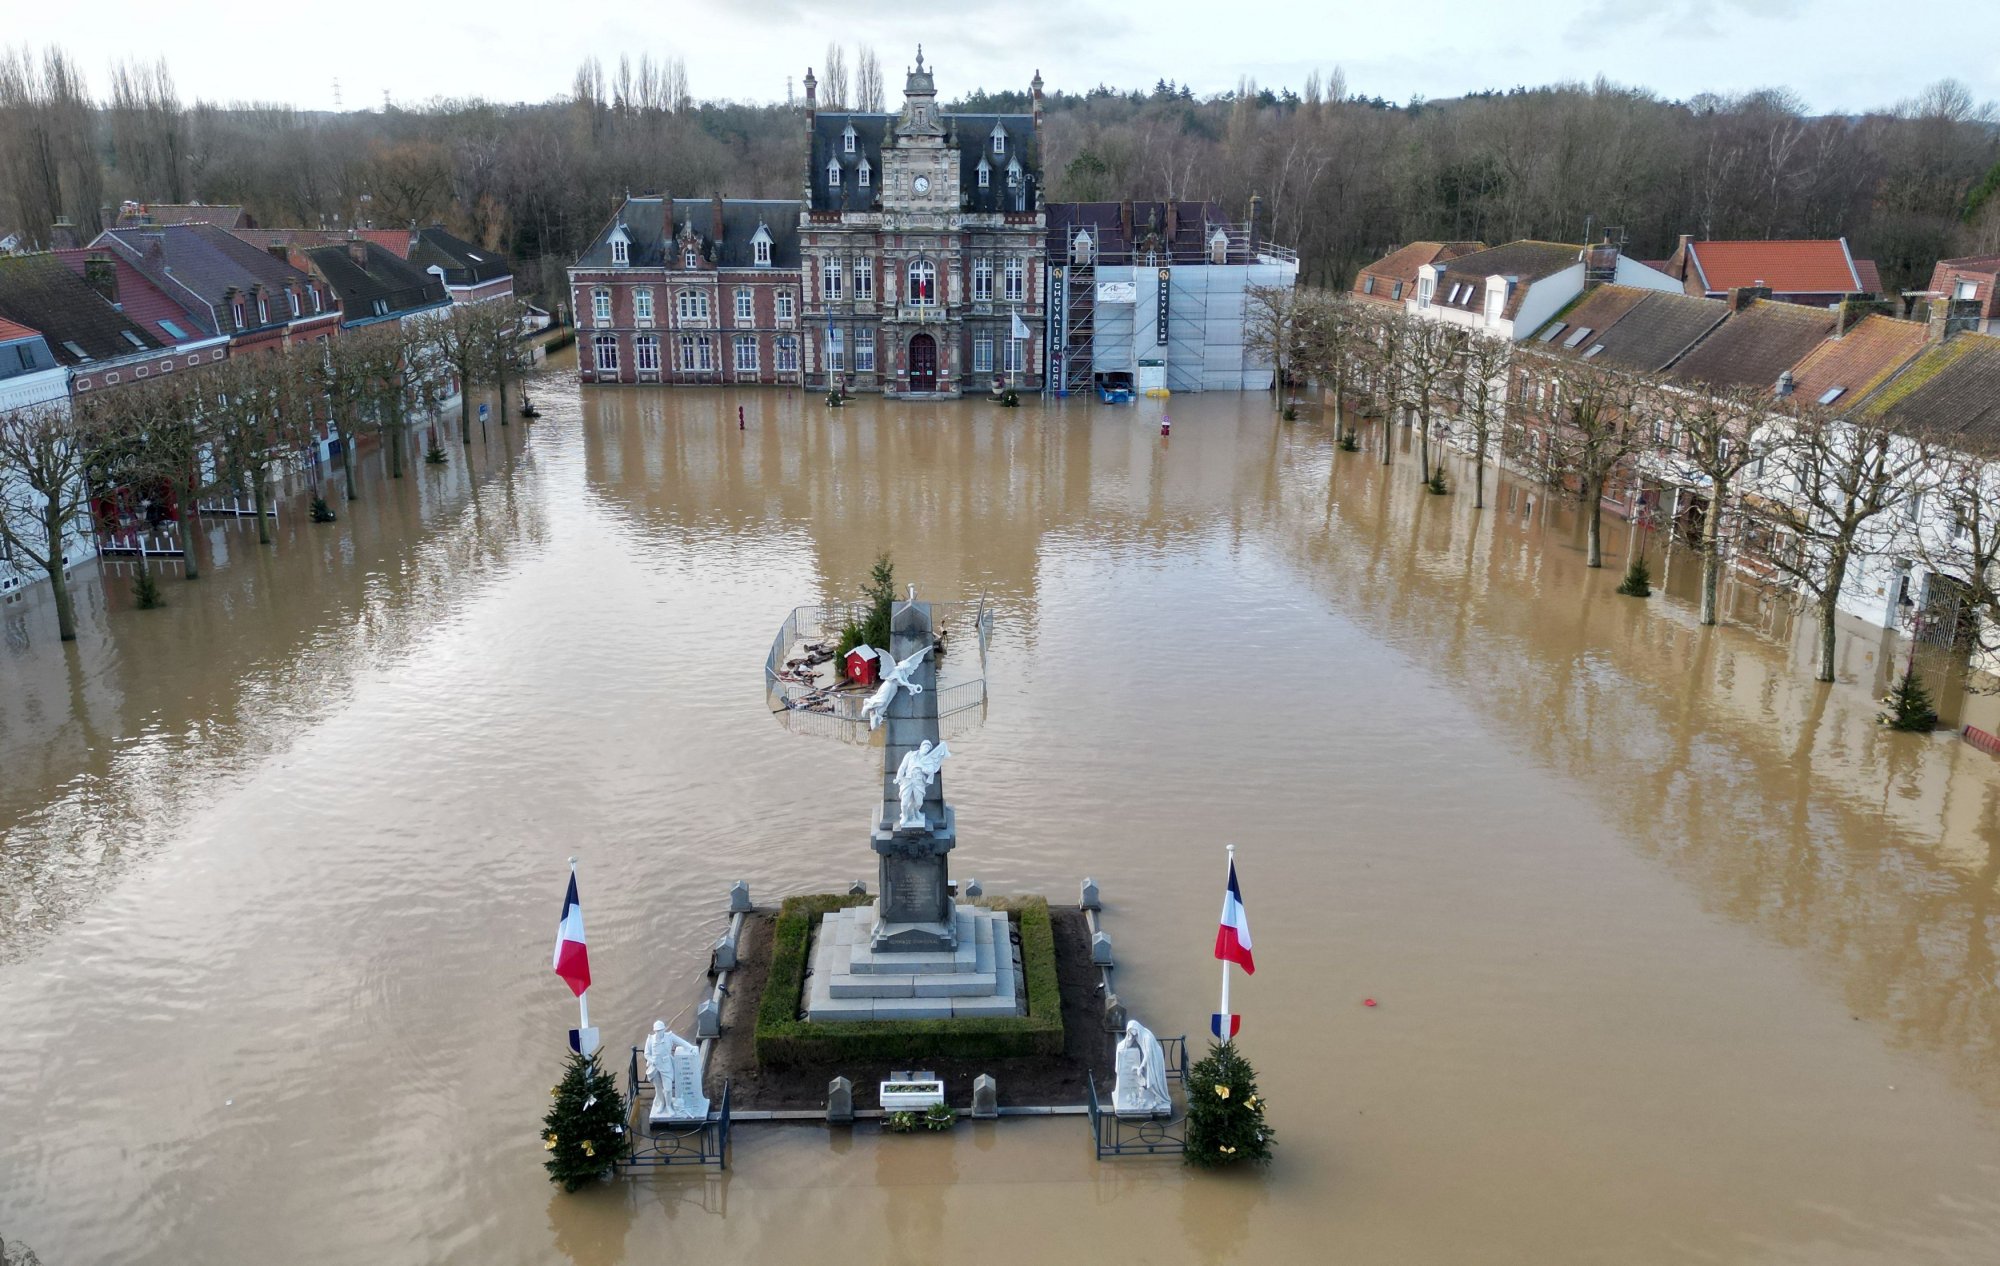 Γαλλία: Στο έλεος κακοκαιρίας η χώρα - Σαρωτικές πλημμύρες στον βορρά - Έκτακτα μέτρα από την κυβέρνηση